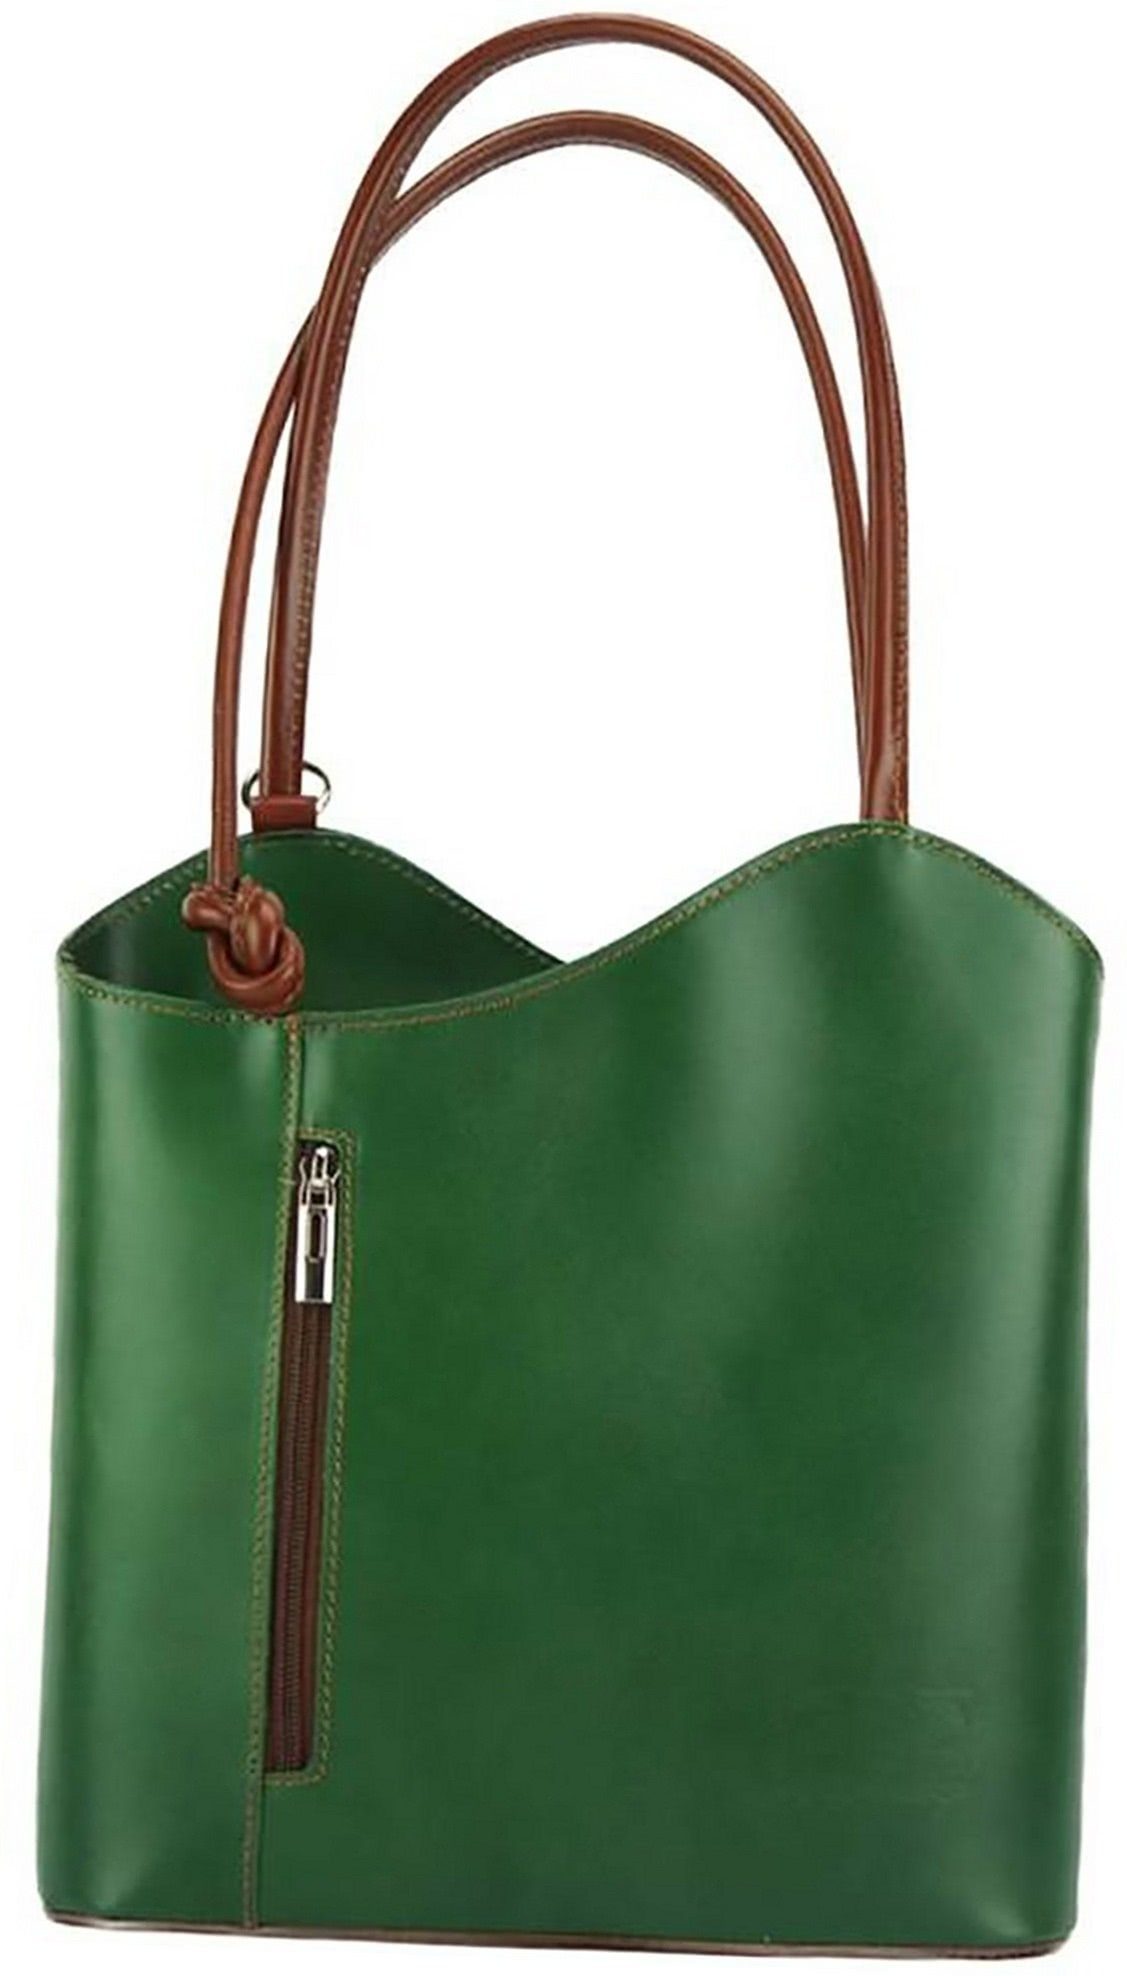 FLORENCE Schultertasche Florence 2in1 Echtleder Damen Handtasche  (Schultertasche, Schultertasche), Damen Tasche Echtleder grün, braun,  Made-In Italy